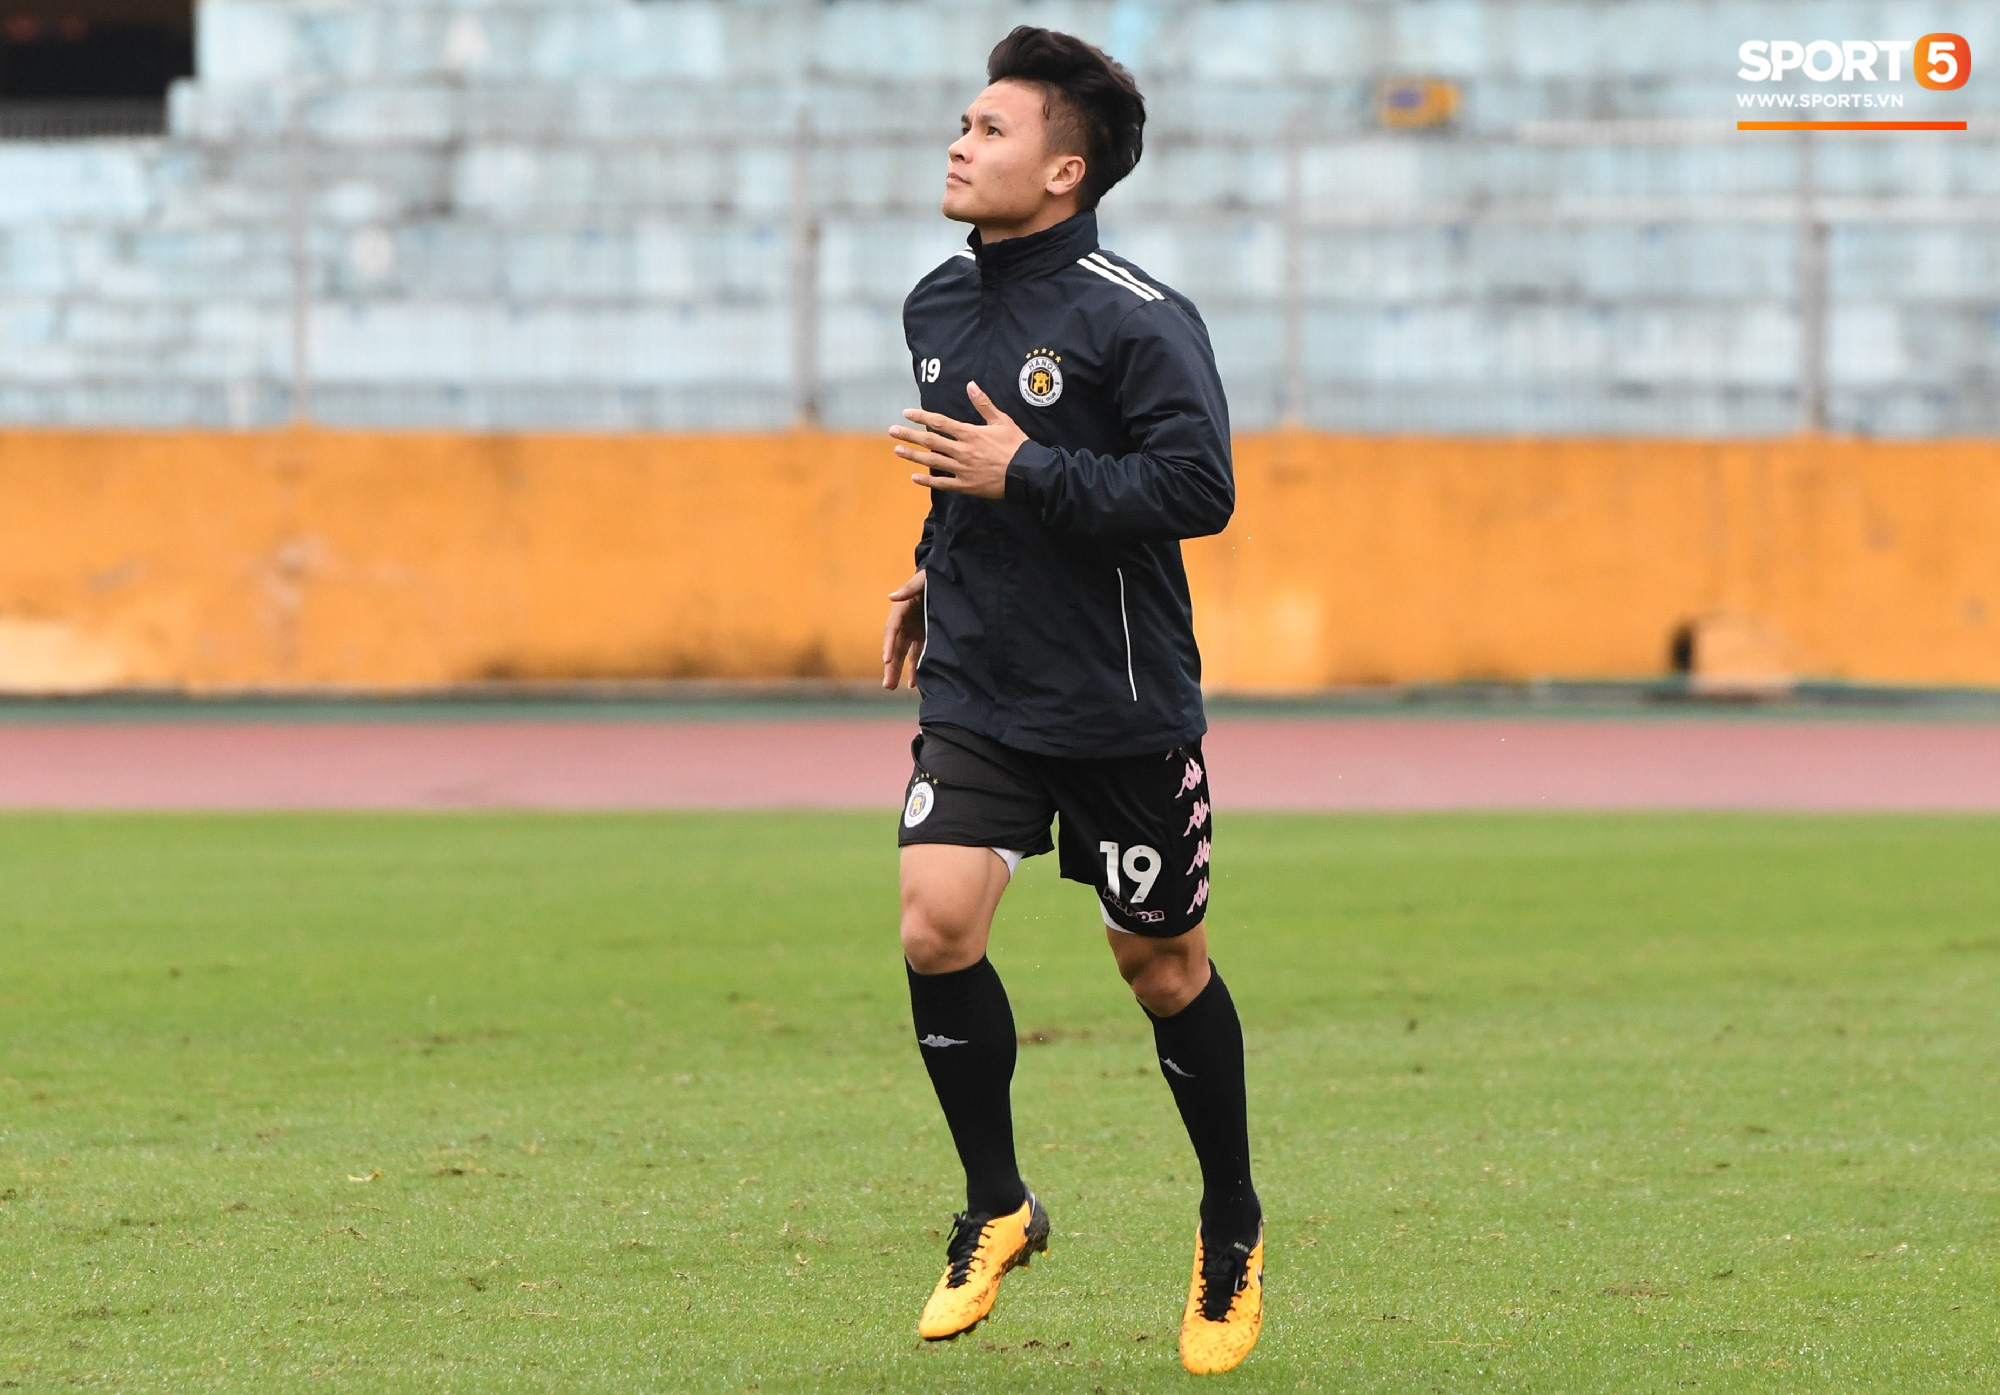 Quang Hải ốm sốt liên miên, Hà Nội FC vẫn phải mang đội hình dặt dẹo đến Đà Nẵng - Ảnh 1.